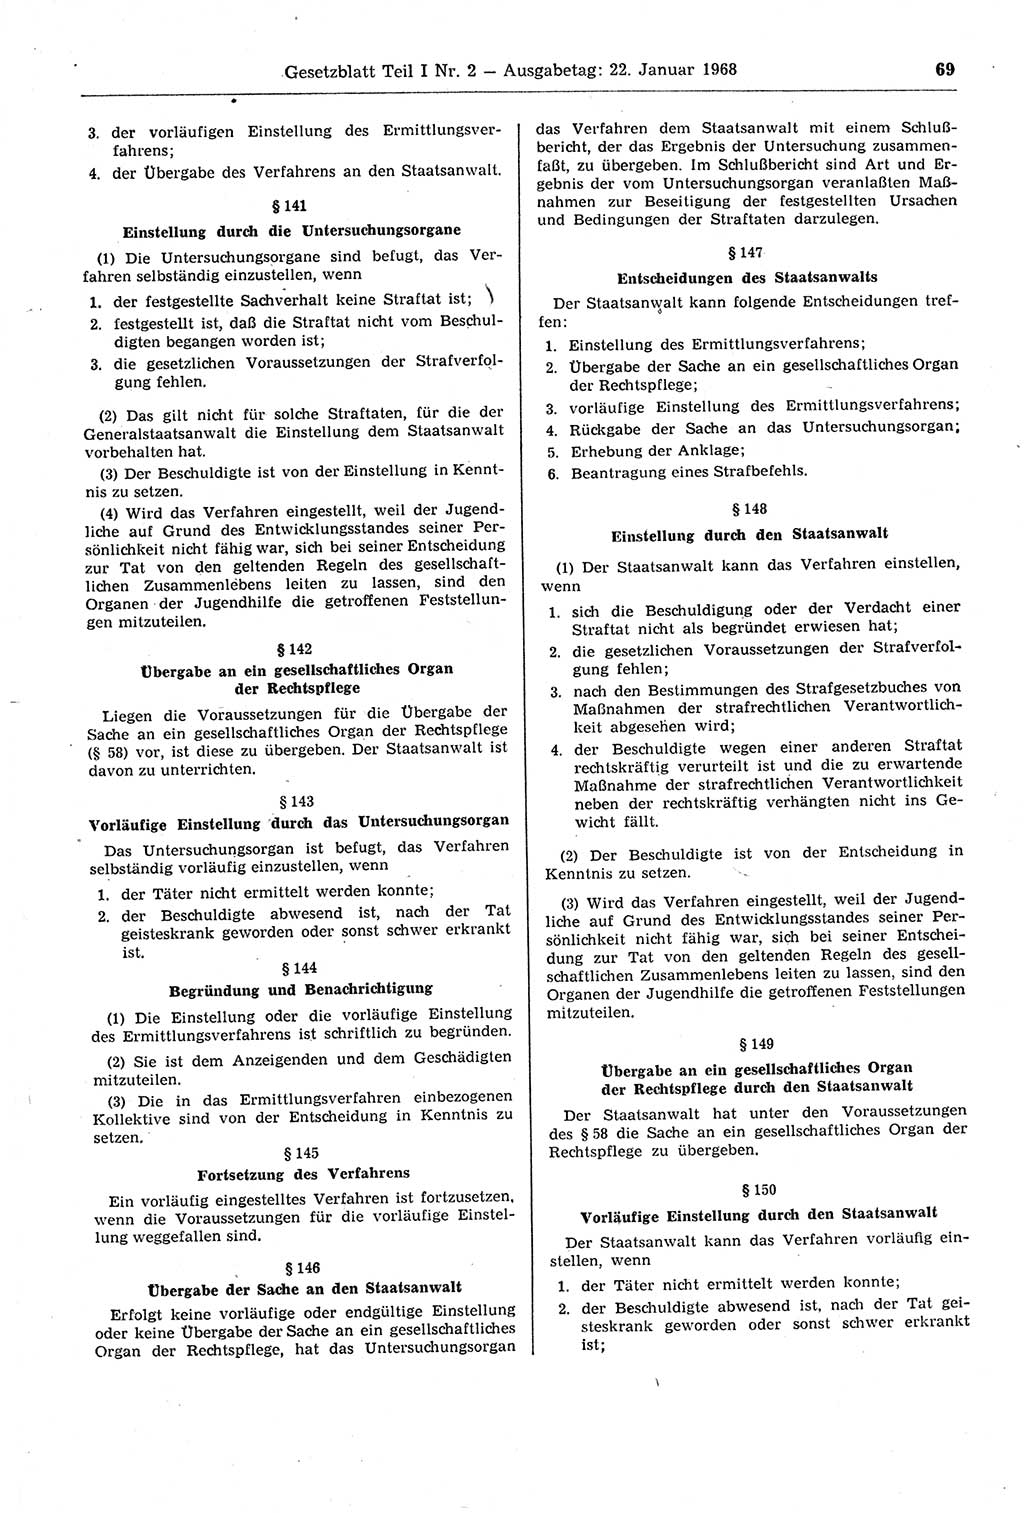 Gesetzblatt (GBl.) der Deutschen Demokratischen Republik (DDR) Teil Ⅰ 1968, Seite 69 (GBl. DDR Ⅰ 1968, S. 69)